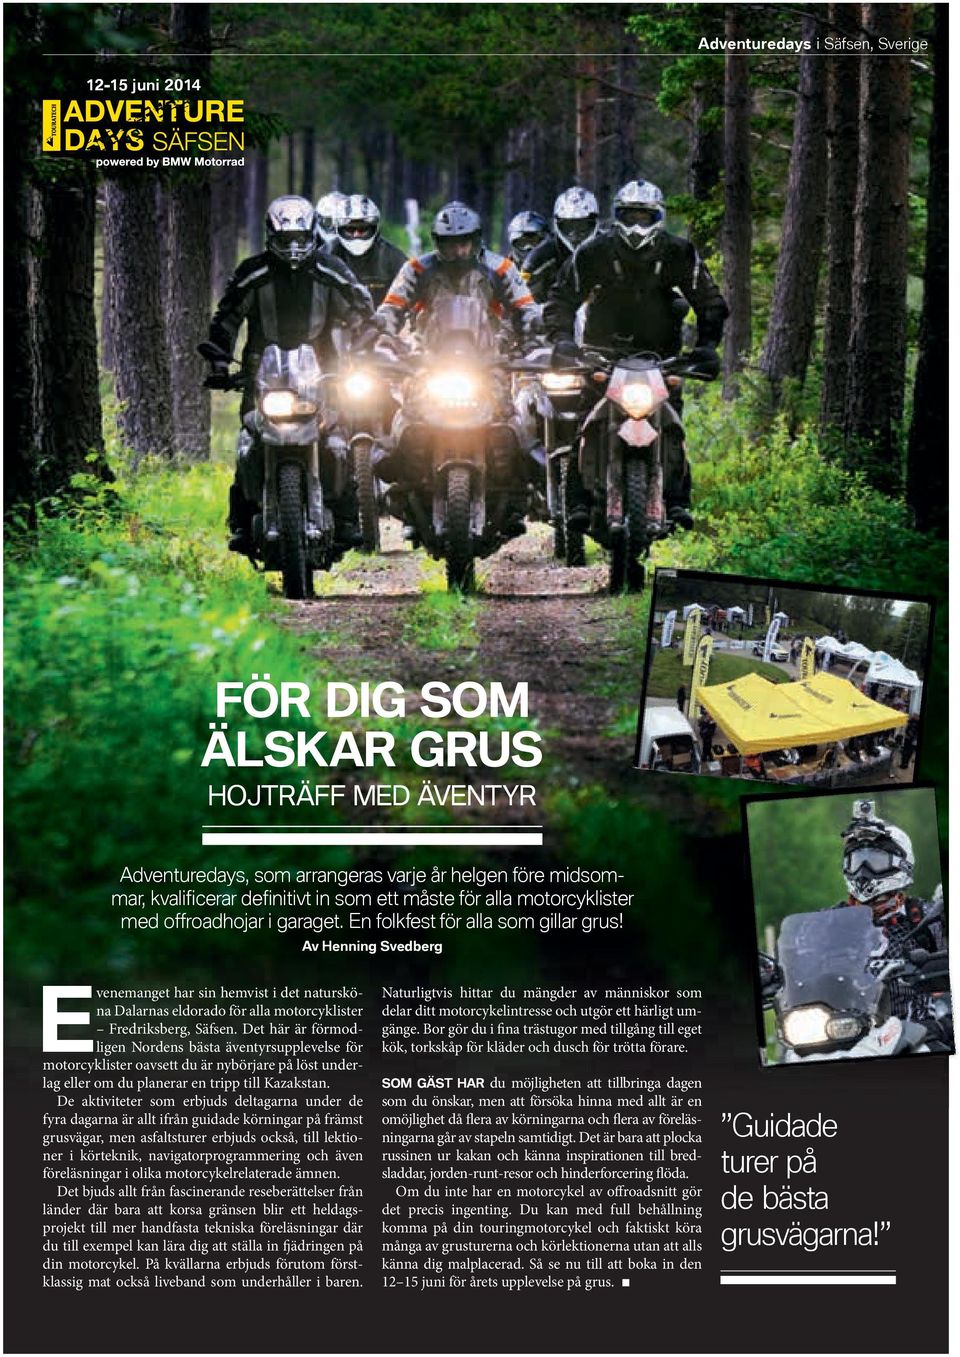 Av Henning Svedberg Evenemanget har sin hemvist i det natursköna Dalarnas eldorado för alla motorcyklister Fredriksberg, Säfsen.